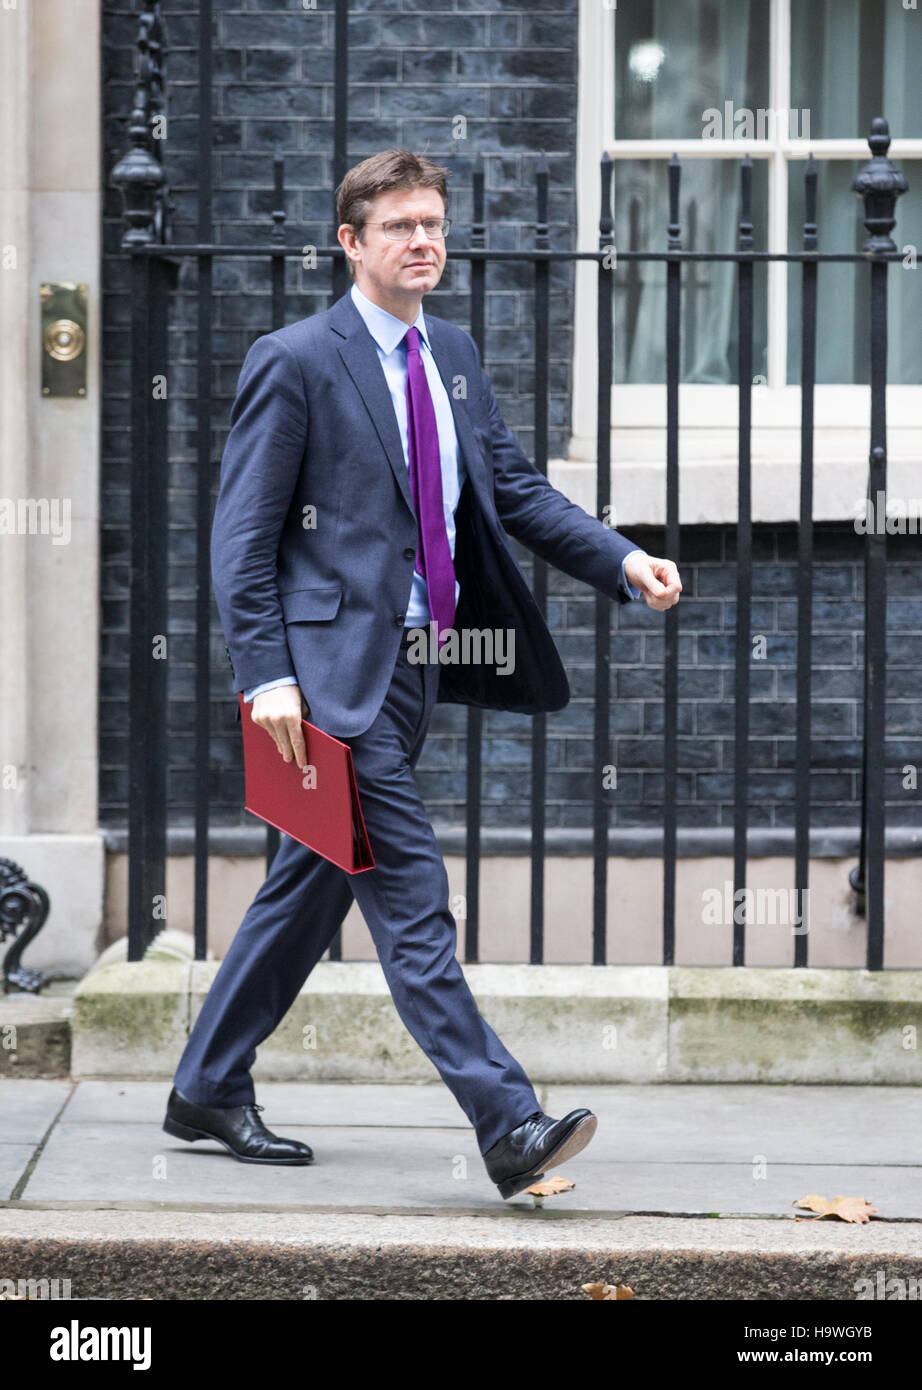 Greg Clark, Staatssekretär für Wirtschaft, Energie und Industriestrategie Blätter 10 Downing Street, nach einer Kabinettssitzung Stockfoto